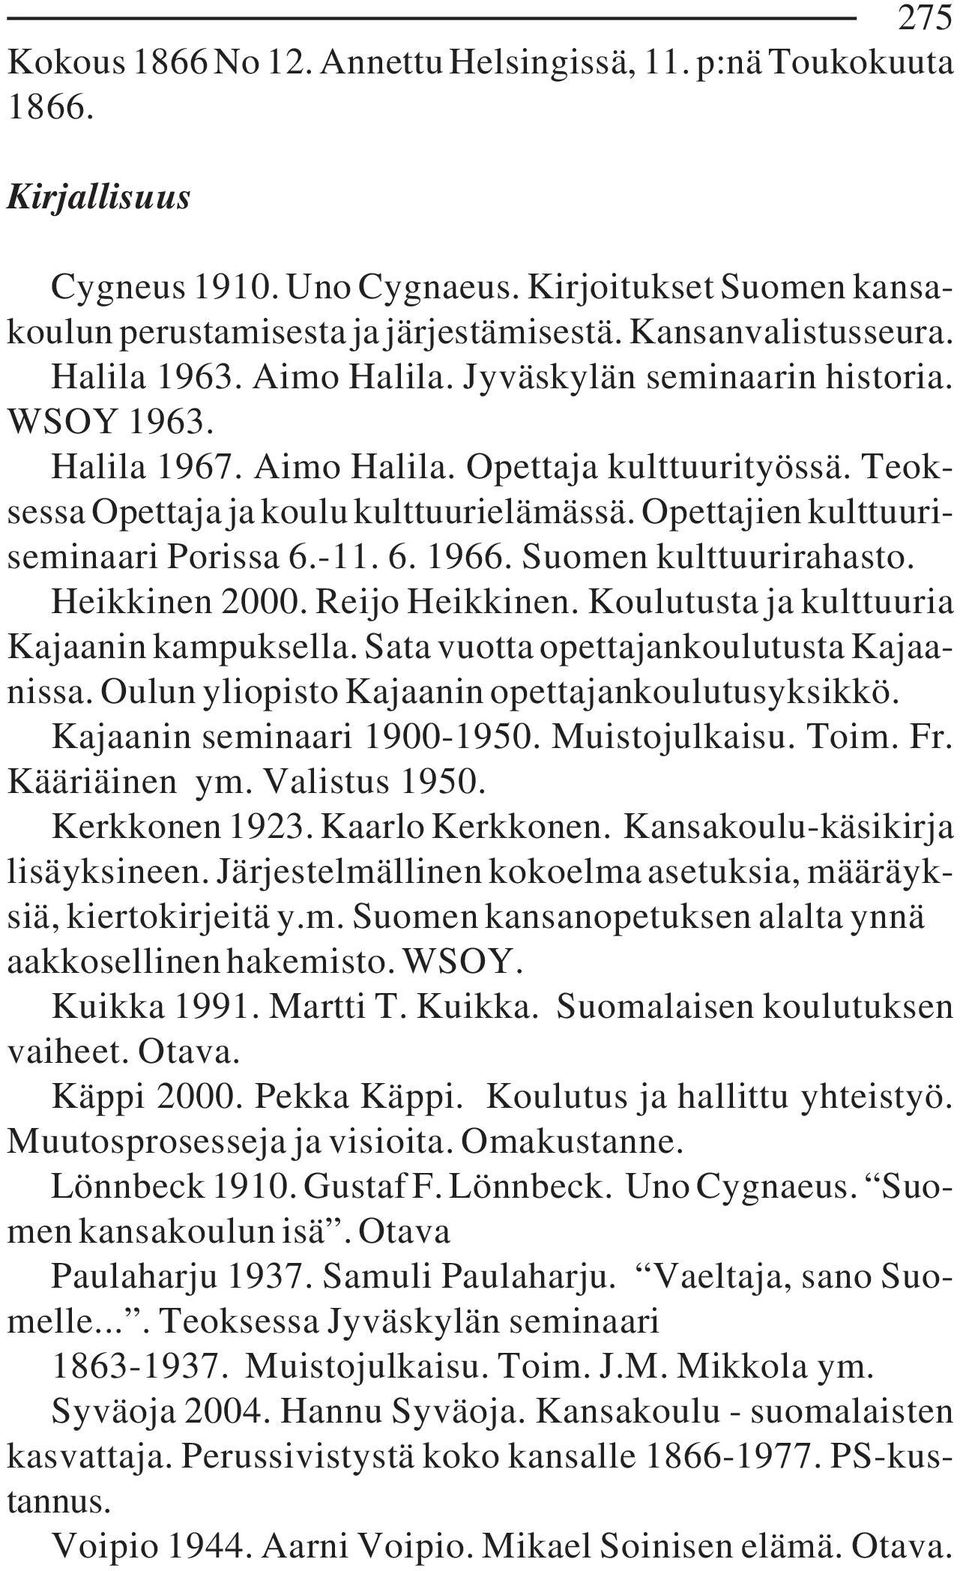 Opettajien kulttuuriseminaari Porissa 6.-11. 6. 1966. Suomen kulttuurirahasto. Heikkinen 2000. Reijo Heikkinen. Koulutusta ja kulttuuria Kajaanin kampuksella.